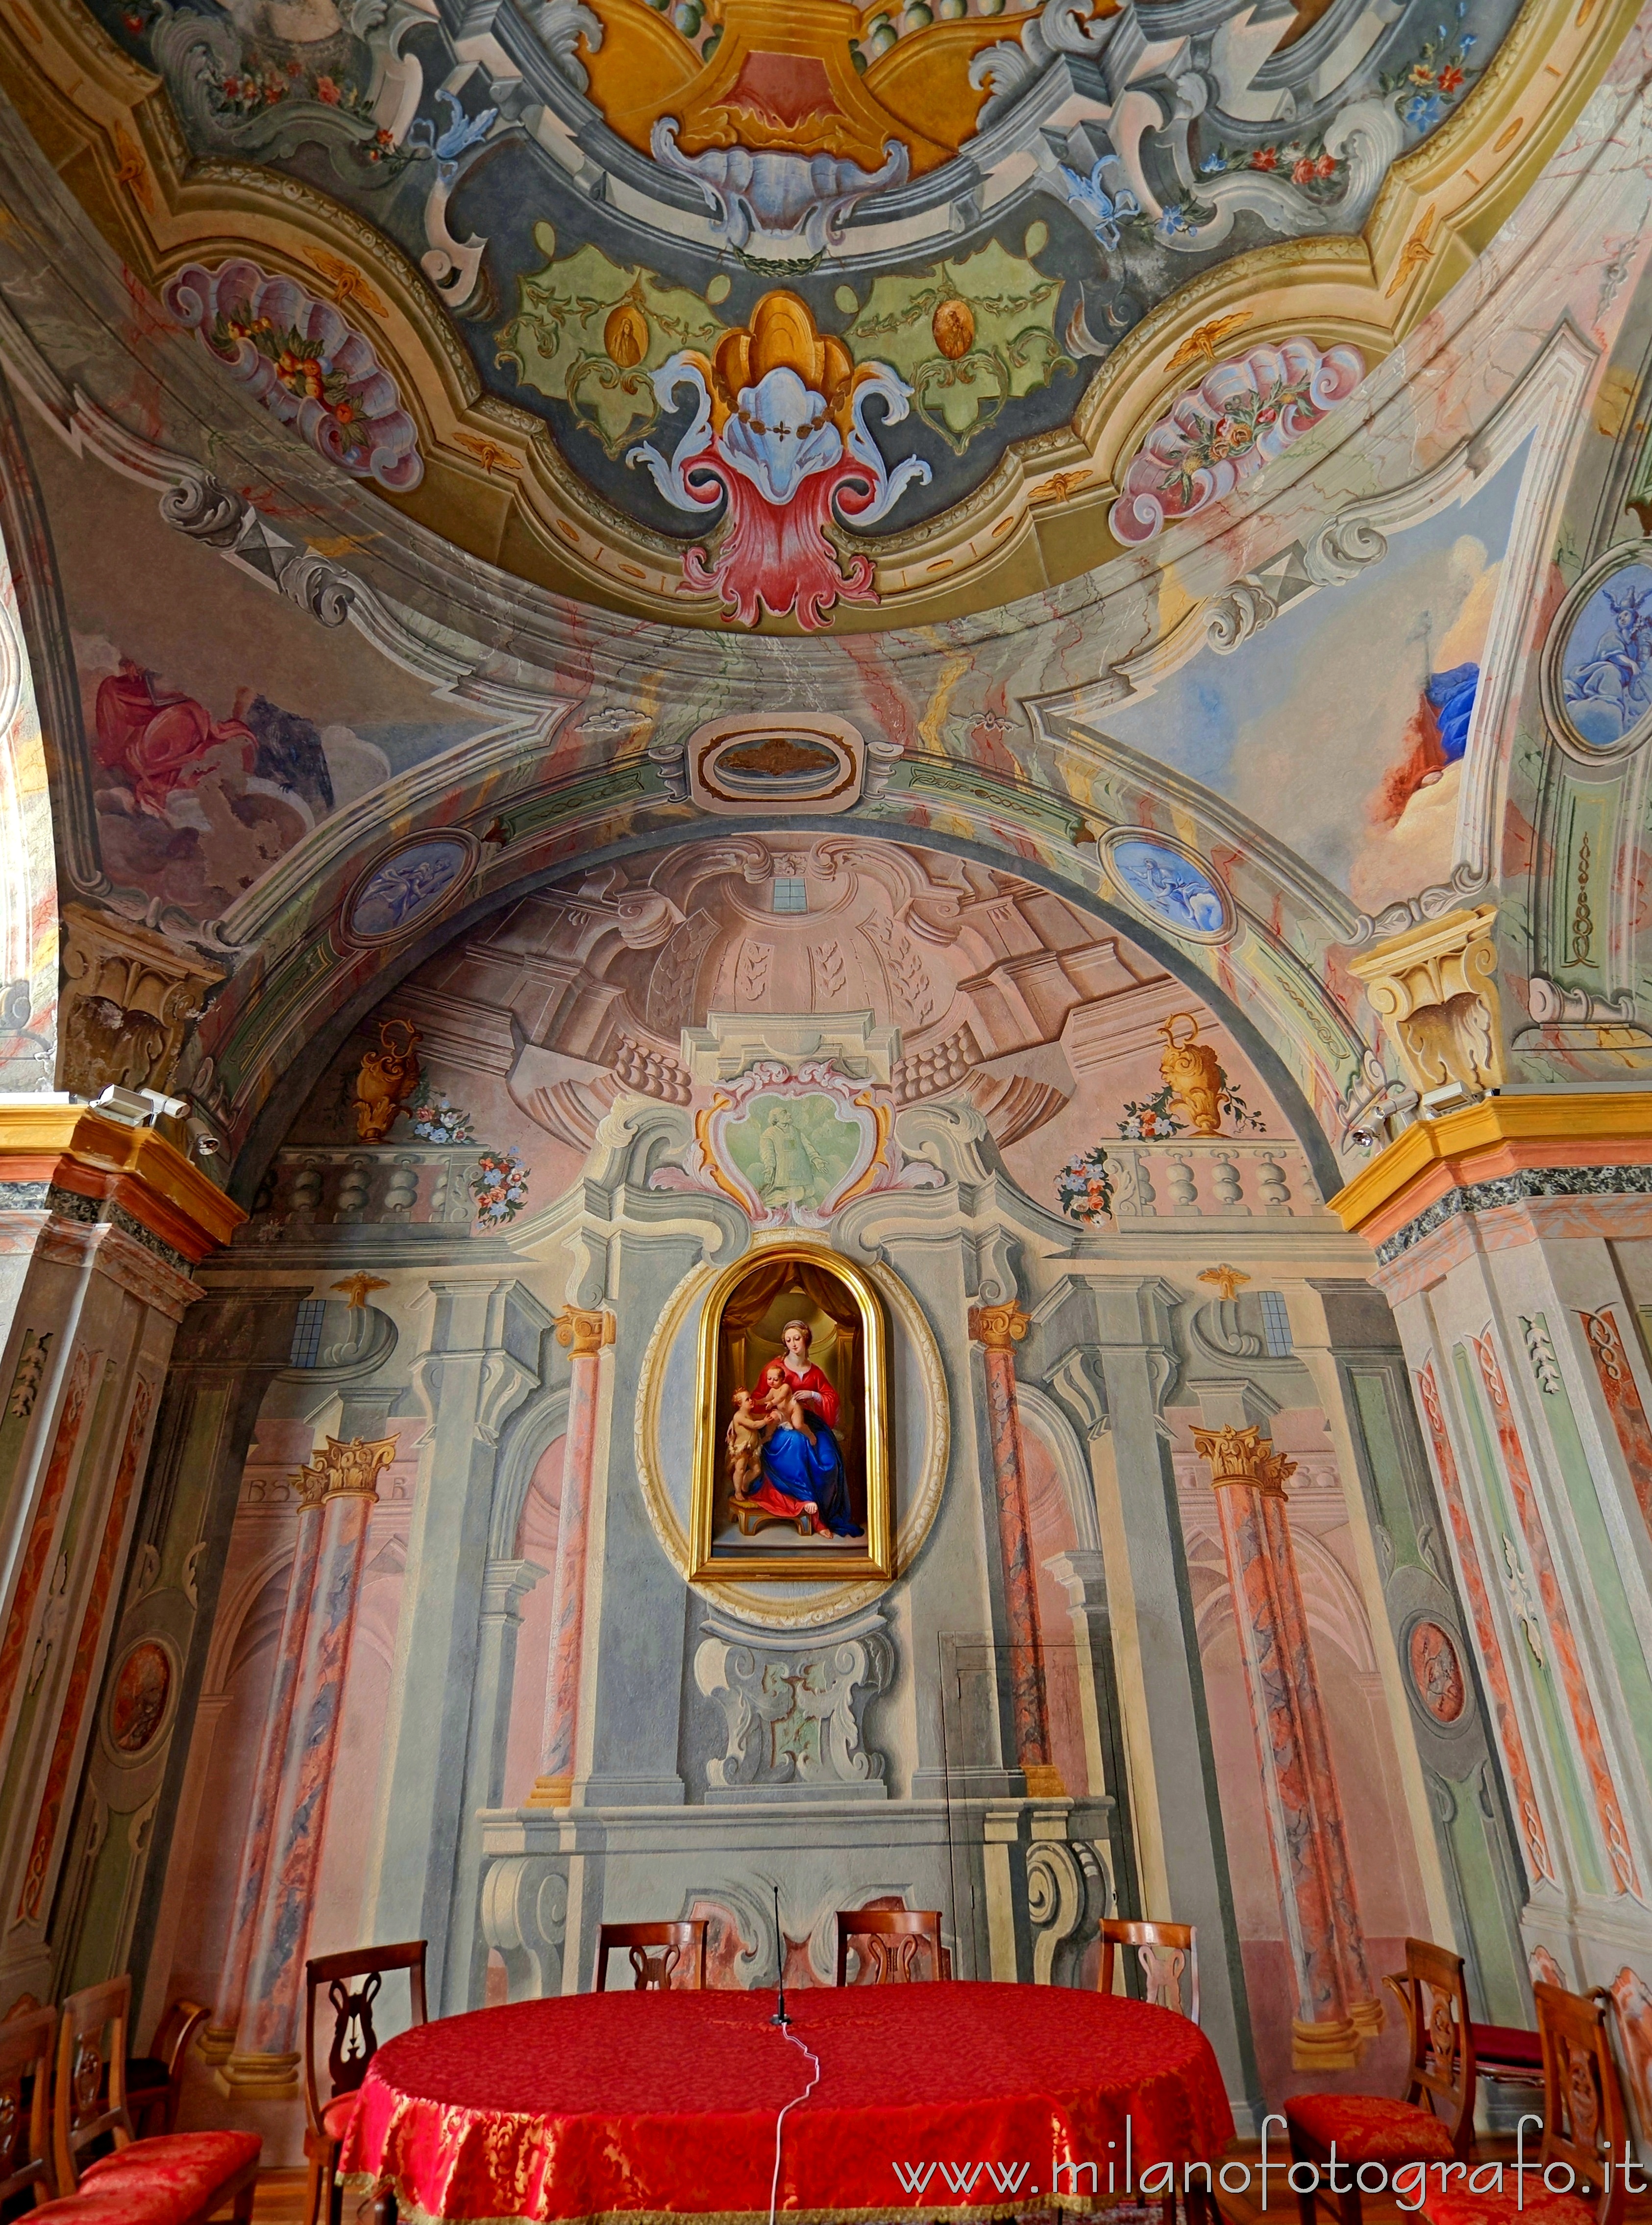 Graglia (Biella, Italy): Wall of the chapel of the Exercises of the Sanctuary of the Virgin of Loreto - Graglia (Biella, Italy)